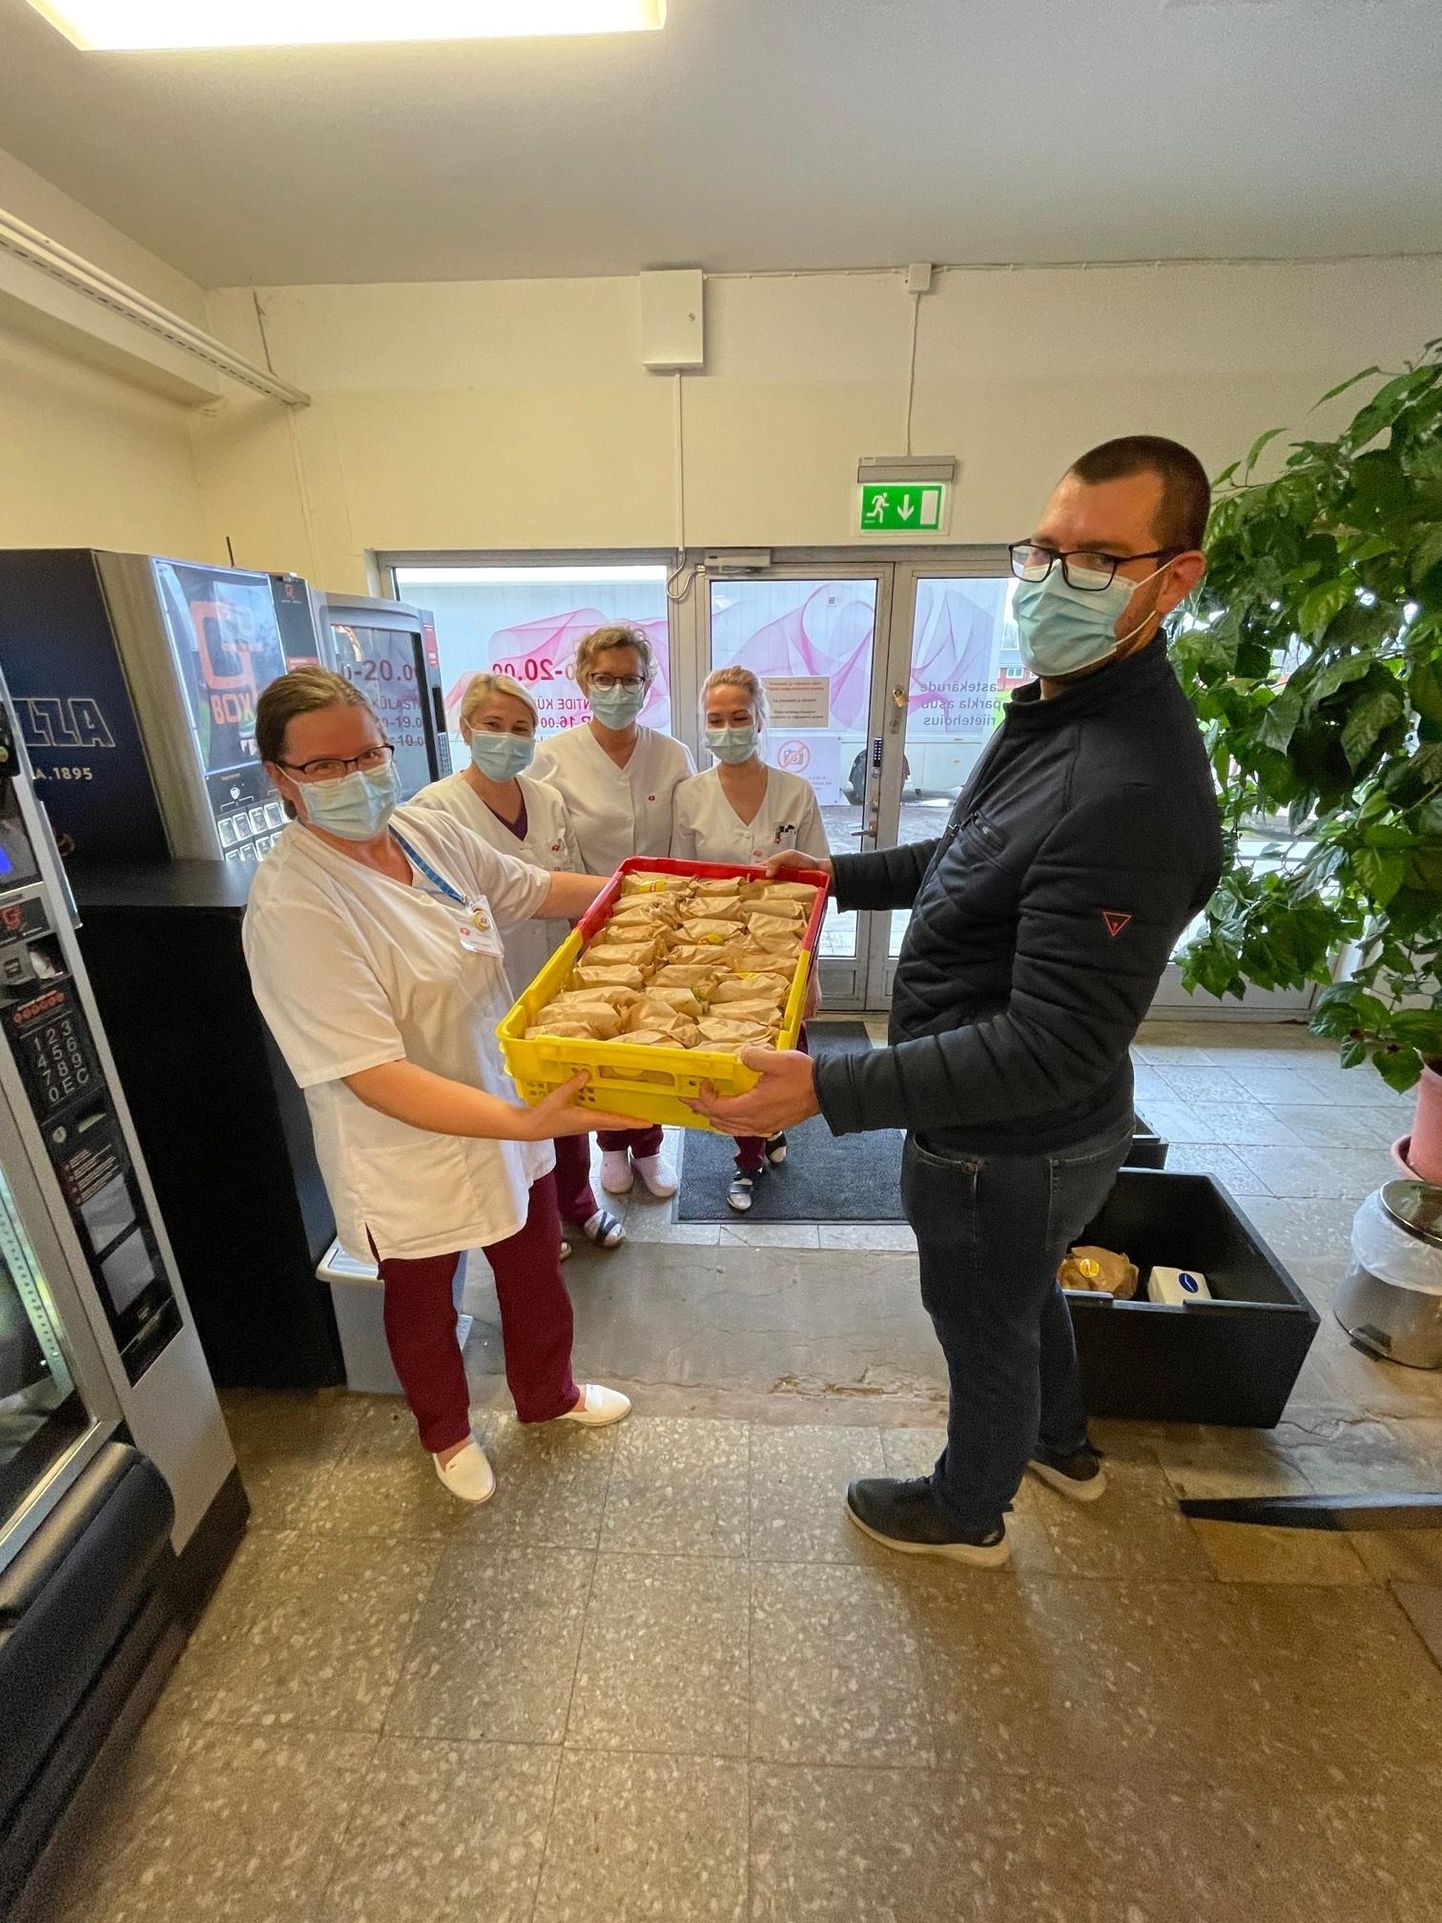 Viljandi kiirtoidukoha Objekt omanik Tauri Lillemaa üllatas täna Viljandi haigla meedikuid saja kingiks toodud hamburgeriga. 